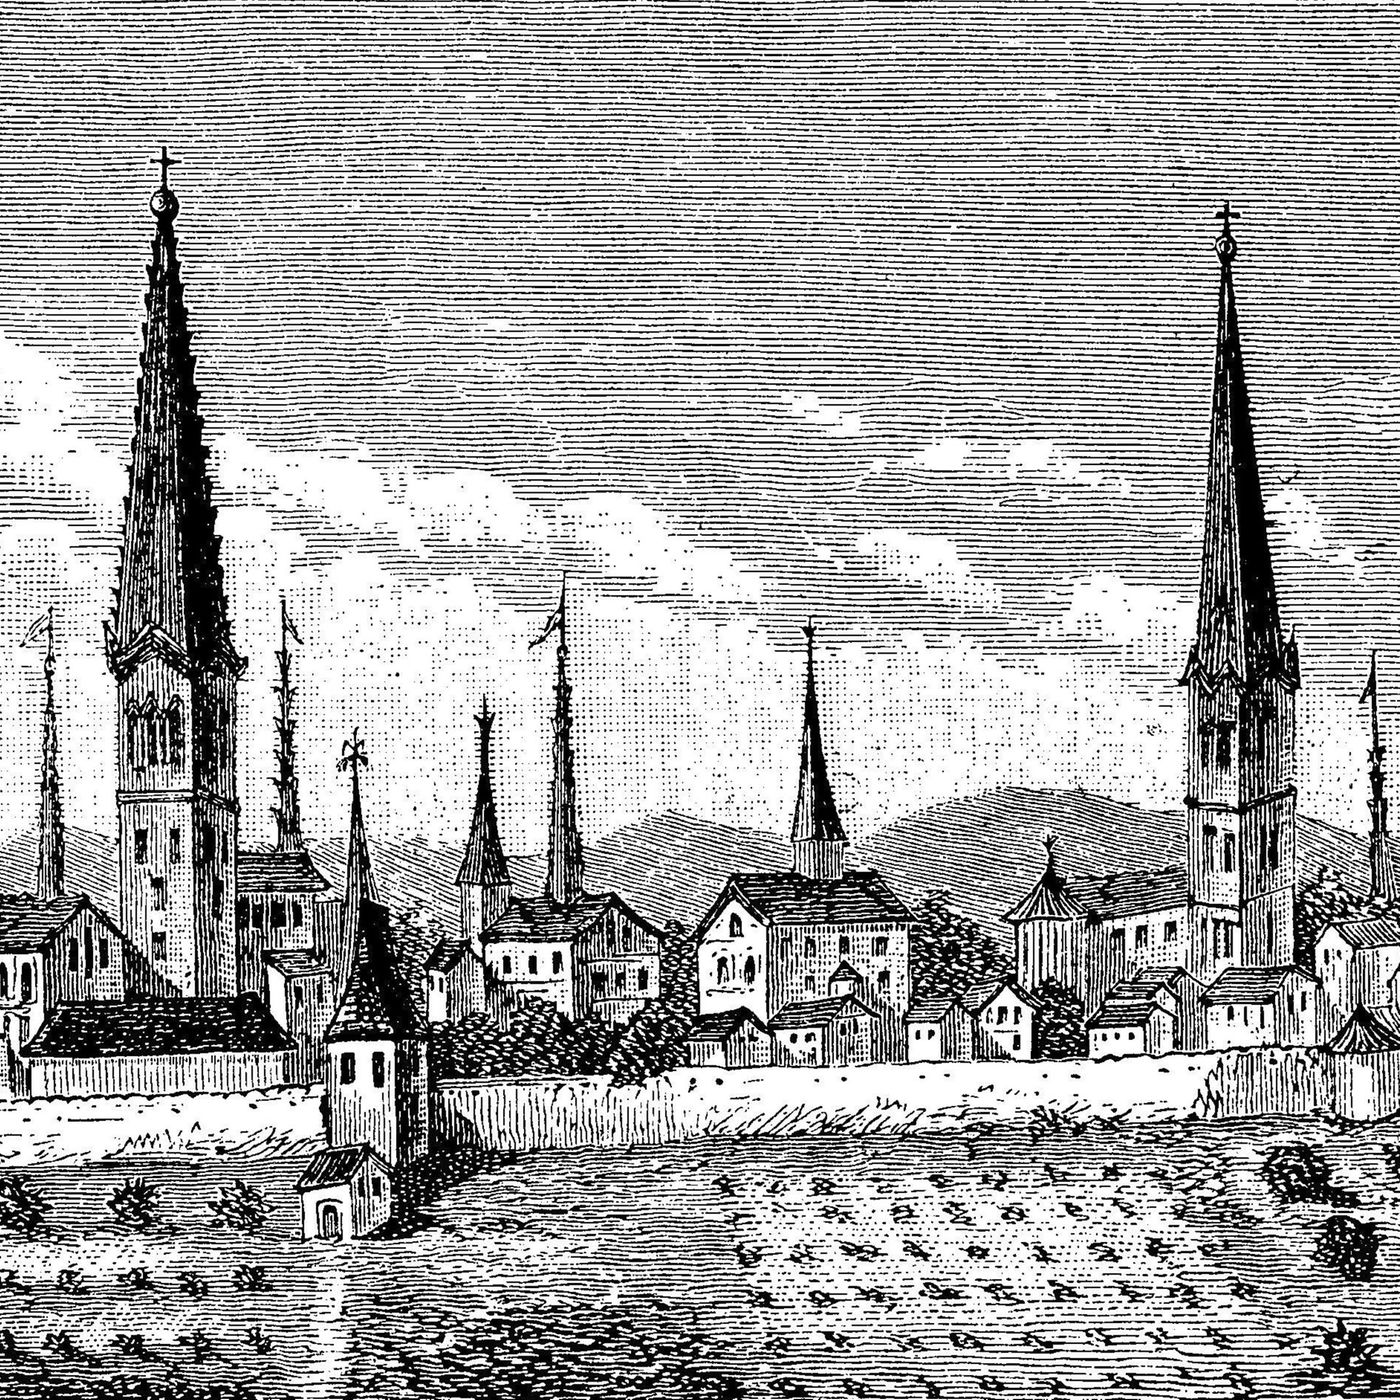 Beginn der großen Dortmunder Fehde (am 21.02.1388)